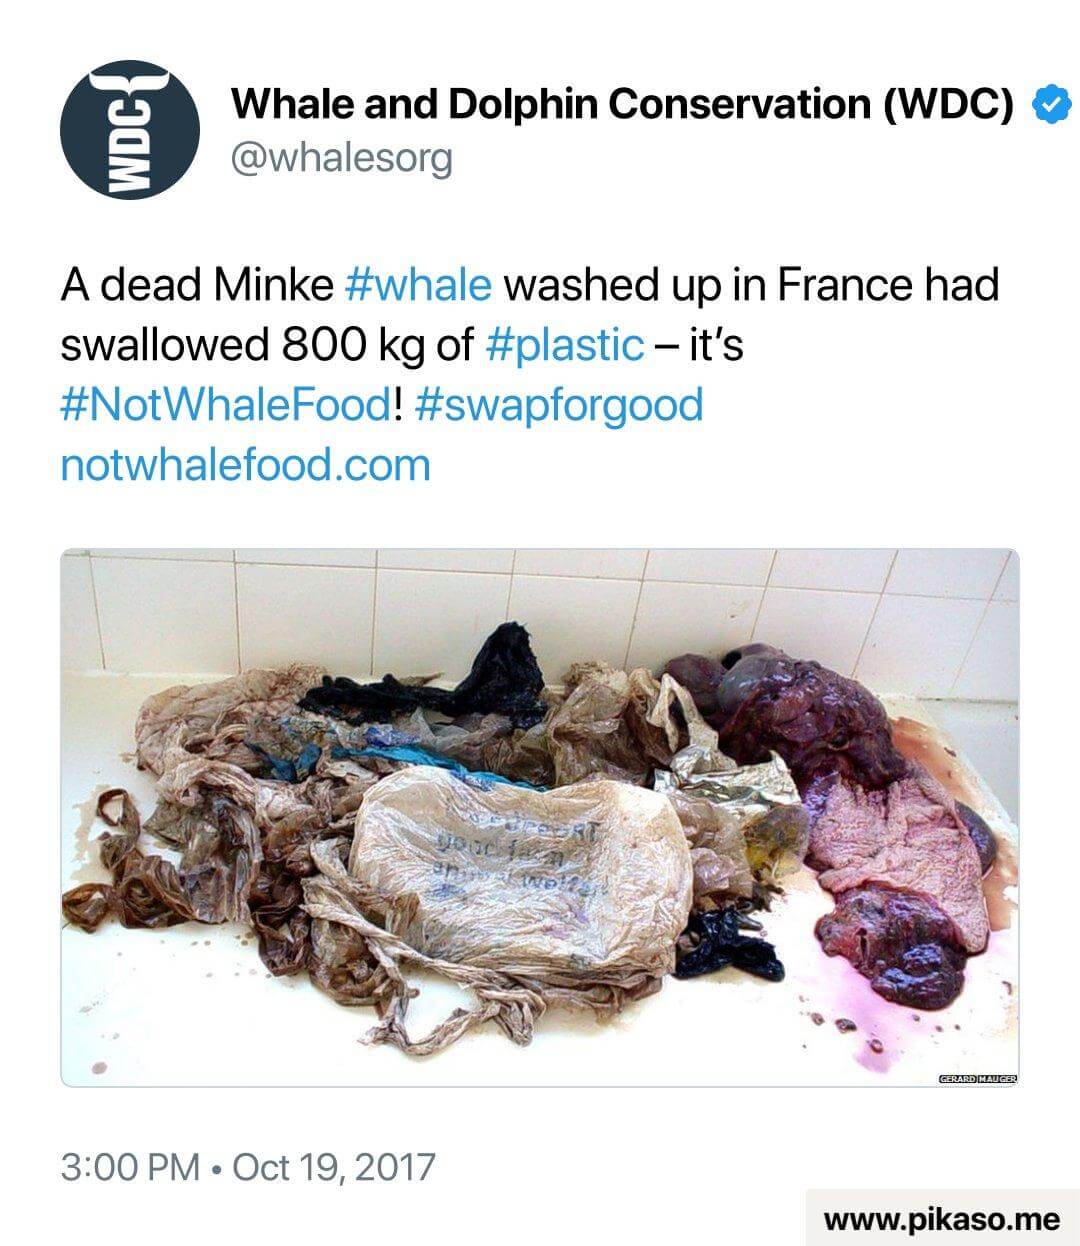 Ein Minke-Wal, der in Frankreich gestrandet ist, mit 800 kg verschlucktem Plastikmüll. Kampagnenbotschaft von Whale and Dolphin Conservation gegen Plastikverschmutzung in den Ozeanen.